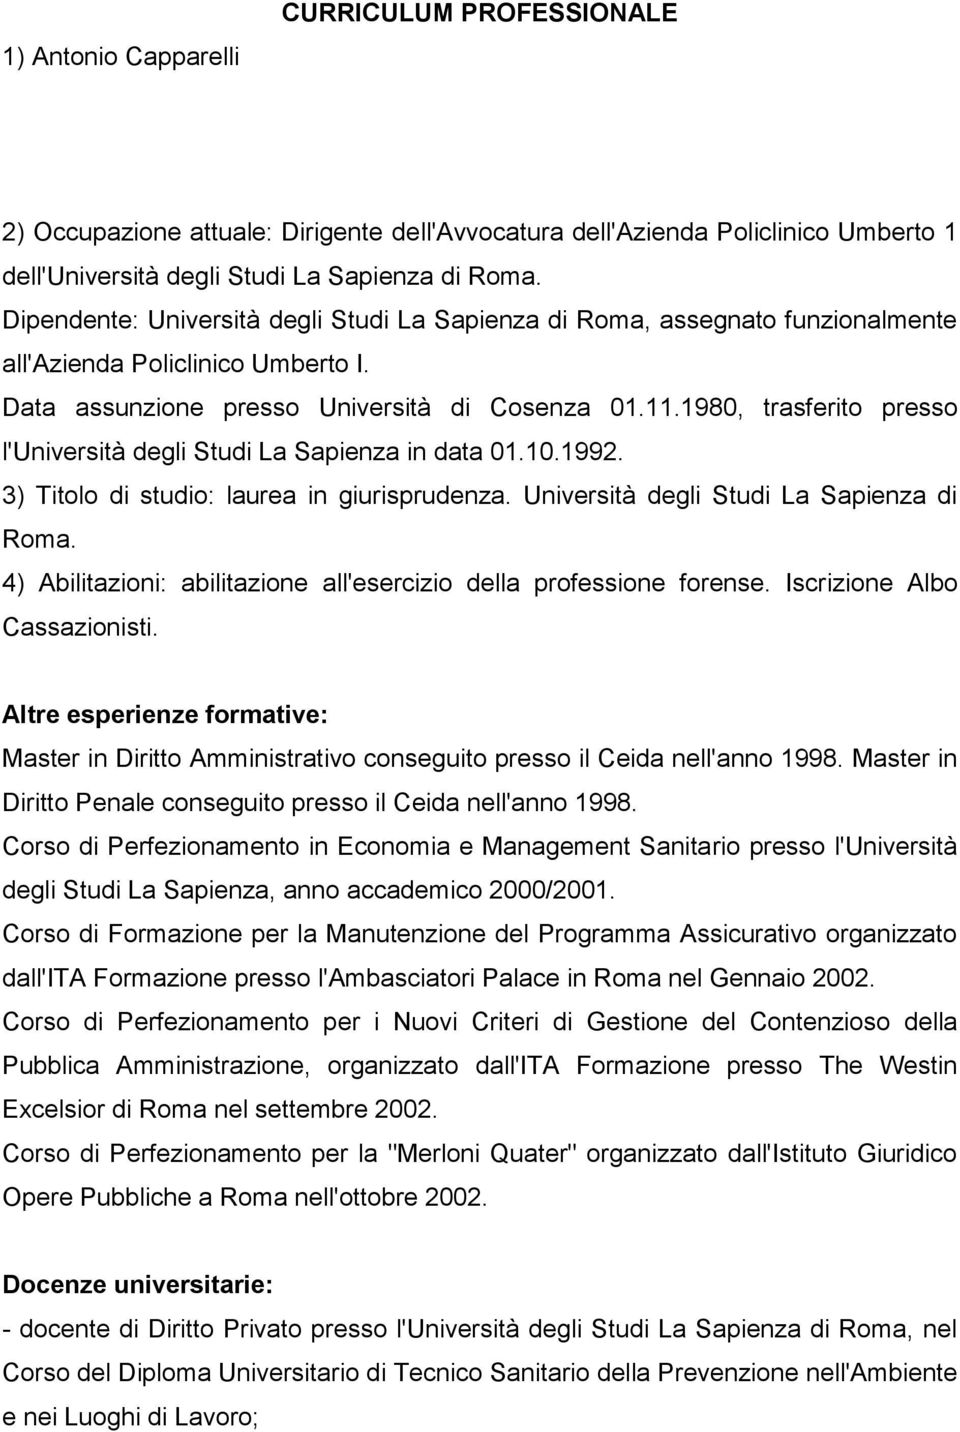 1980, trasferito presso l'università degli Studi La Sapienza in data 01.10.1992. 3) Titolo di studio: laurea in giurisprudenza. Università degli Studi La Sapienza di Roma.